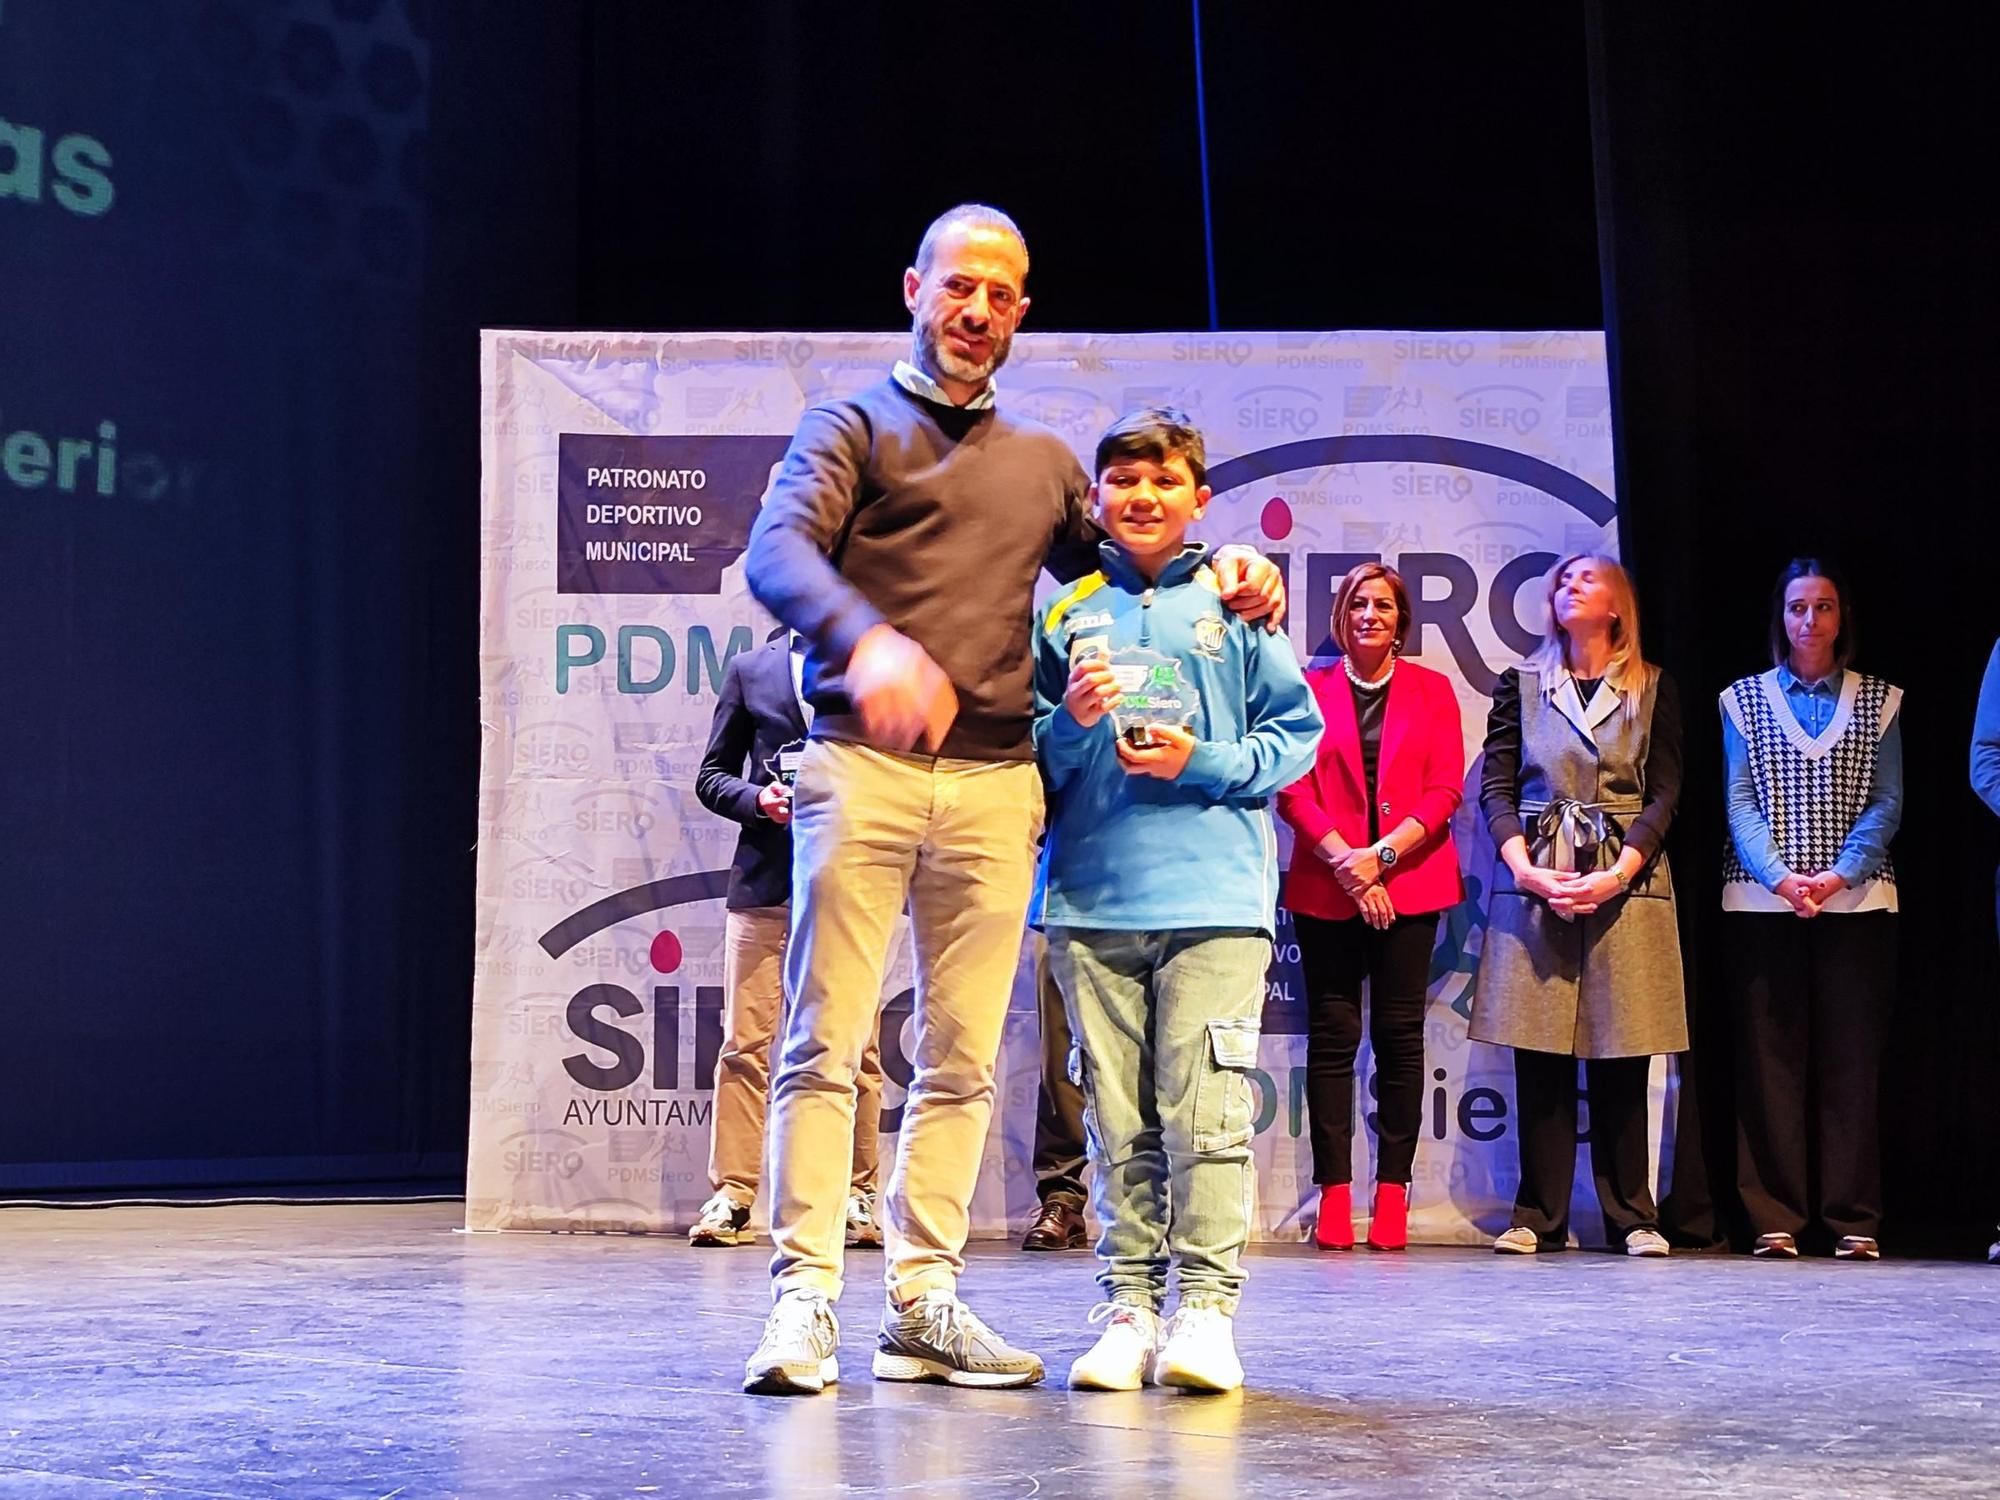 Siero premia el esfuerzo de una vida saludable: así fue la Gala del Deporte